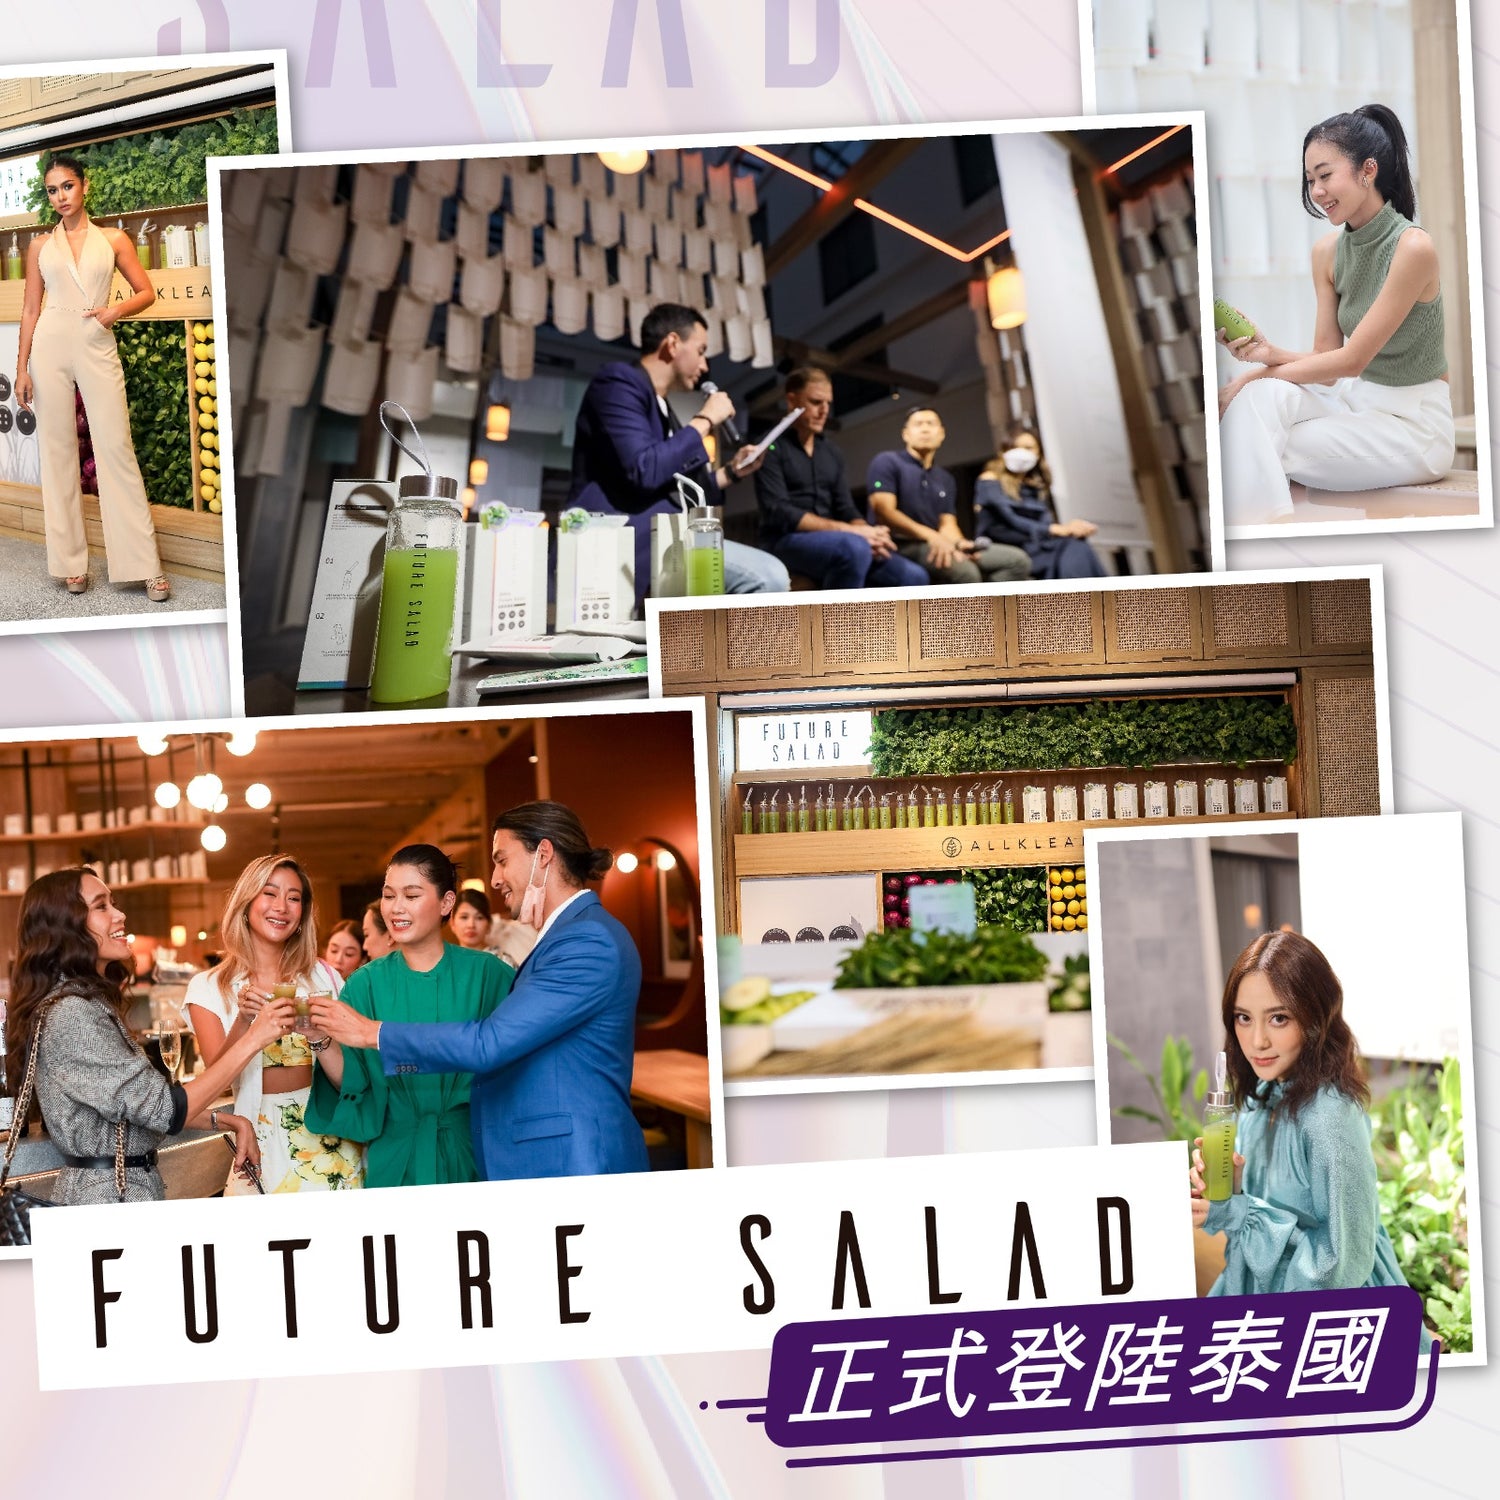 明星網紅熱捧、爆紅香港的Future Salad正式登陸泰國